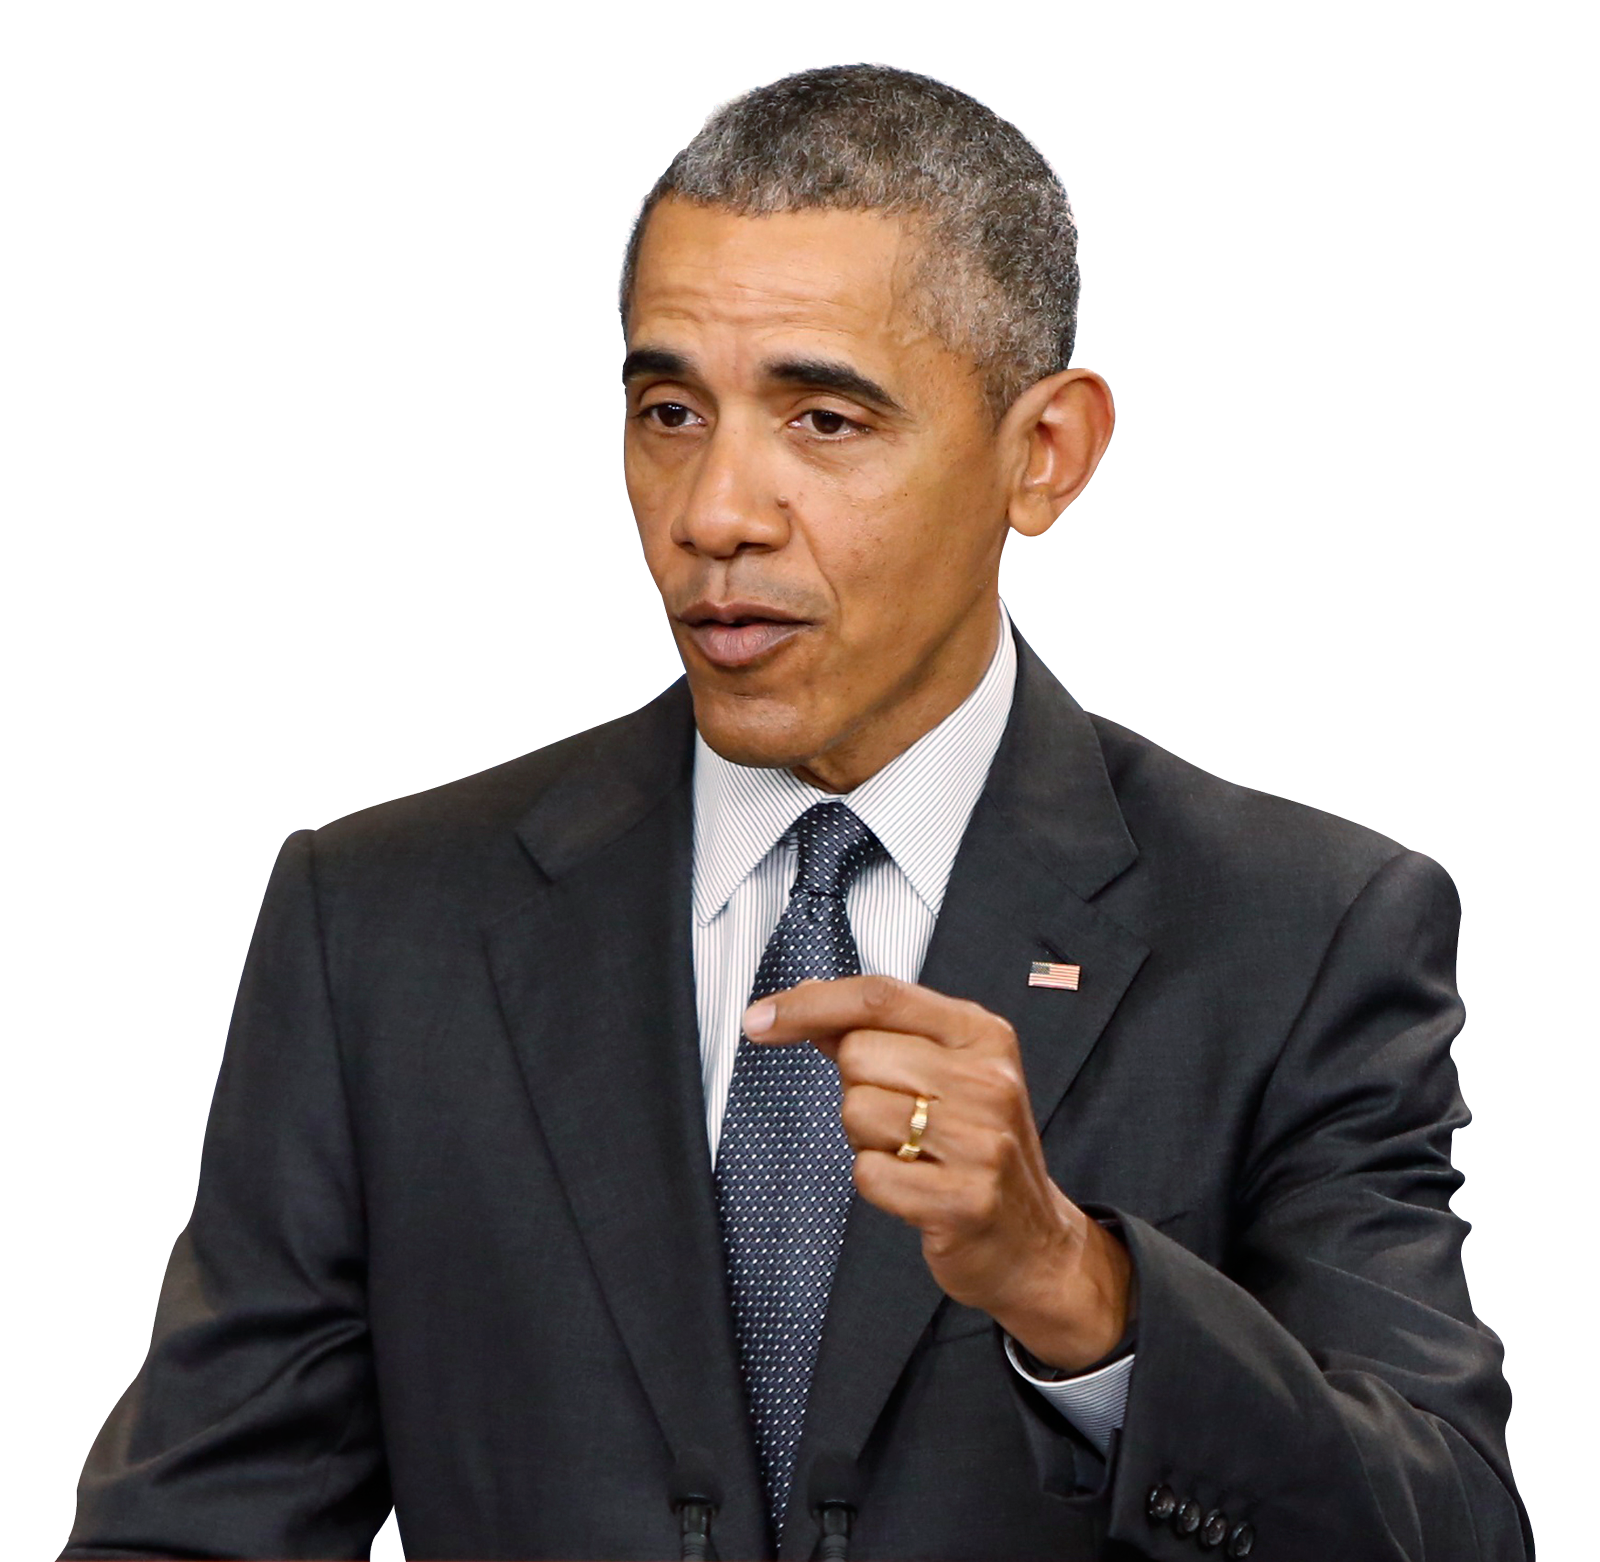 Barack Obama PNG HD Image